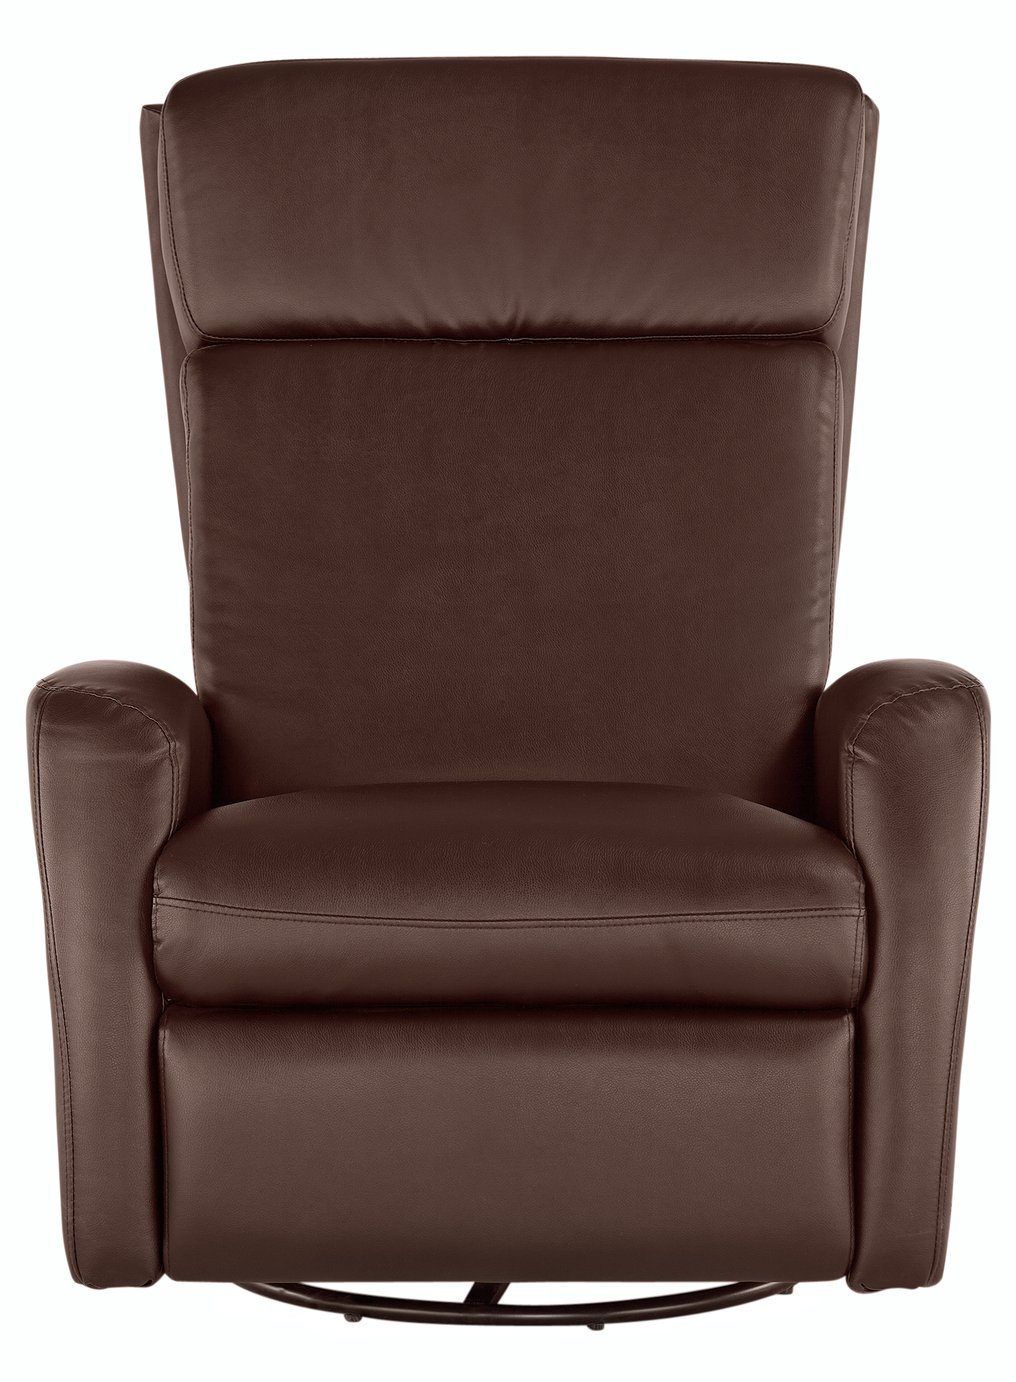 Argos Home Rock-R-Round Recliner Chair - Chocolate (4123361) | Argos